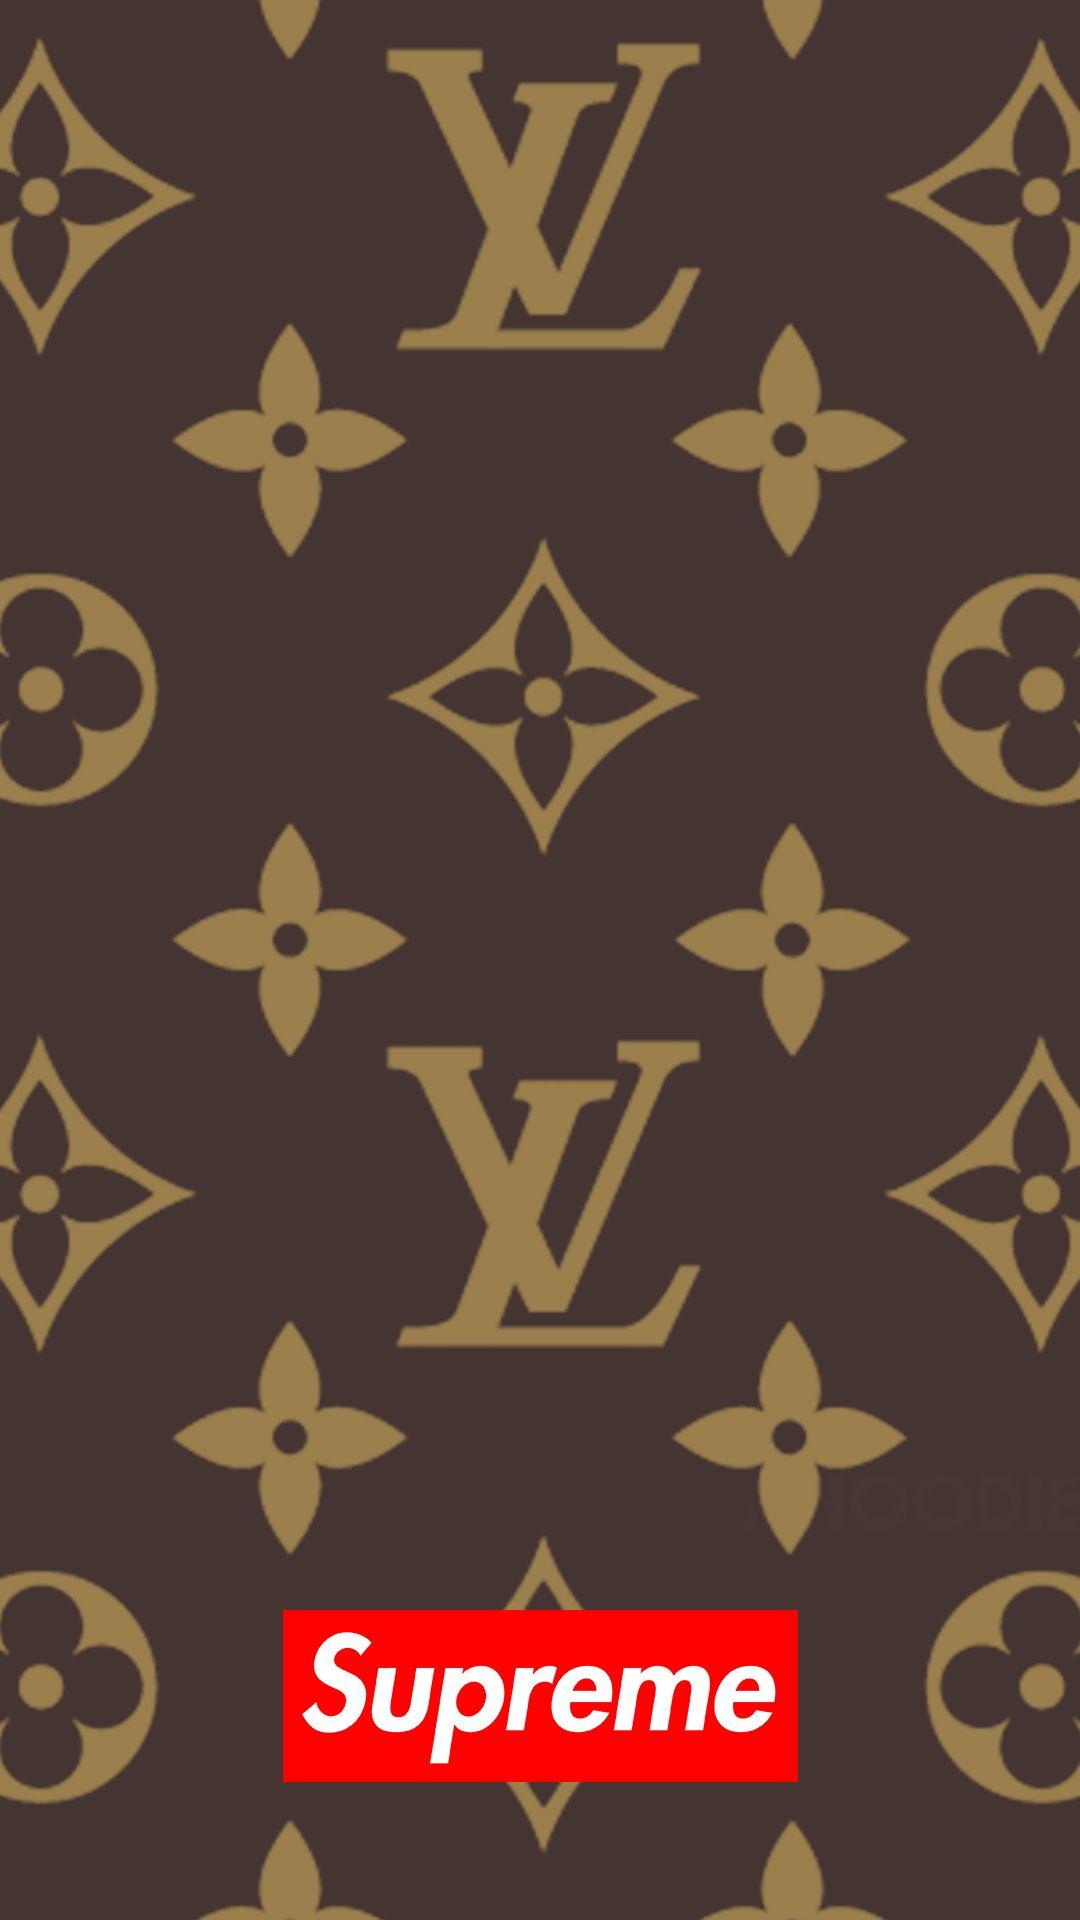 Supreme X Louis Vuitton Brown Logo - Download Supreme x louis vuitton 1080 x 1920 Wallpaper